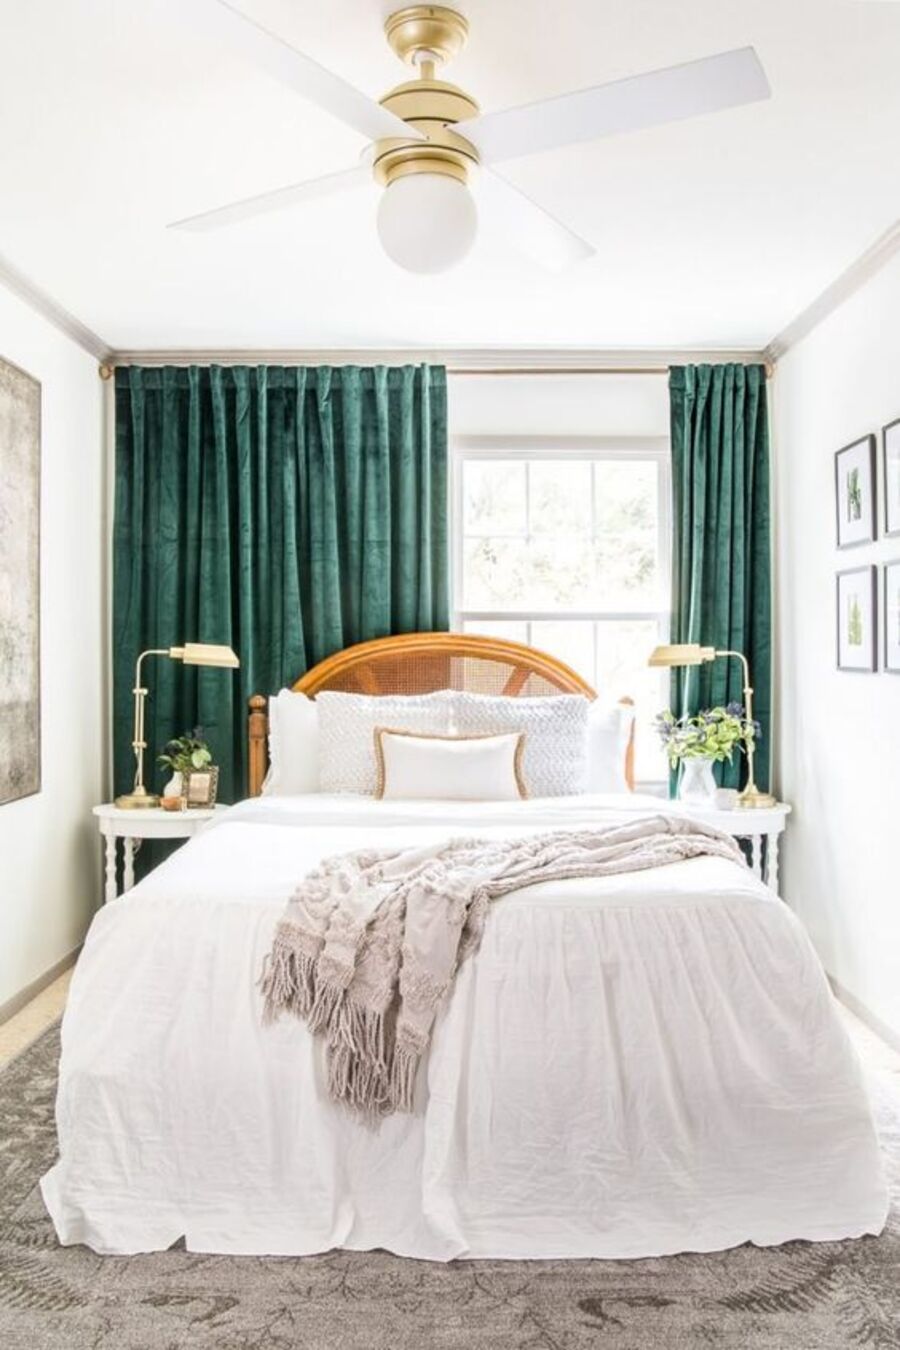 Dormitorio de paredes, techo, veladores y ropa de cama blancos. Las cortinas son de terciopelo verde oscuro, la alfombra y manta sobre la cama son grises y la cama, de madera. Sobre el techo cuelga una lámpara y ventilador blanco con soporte dorado. 